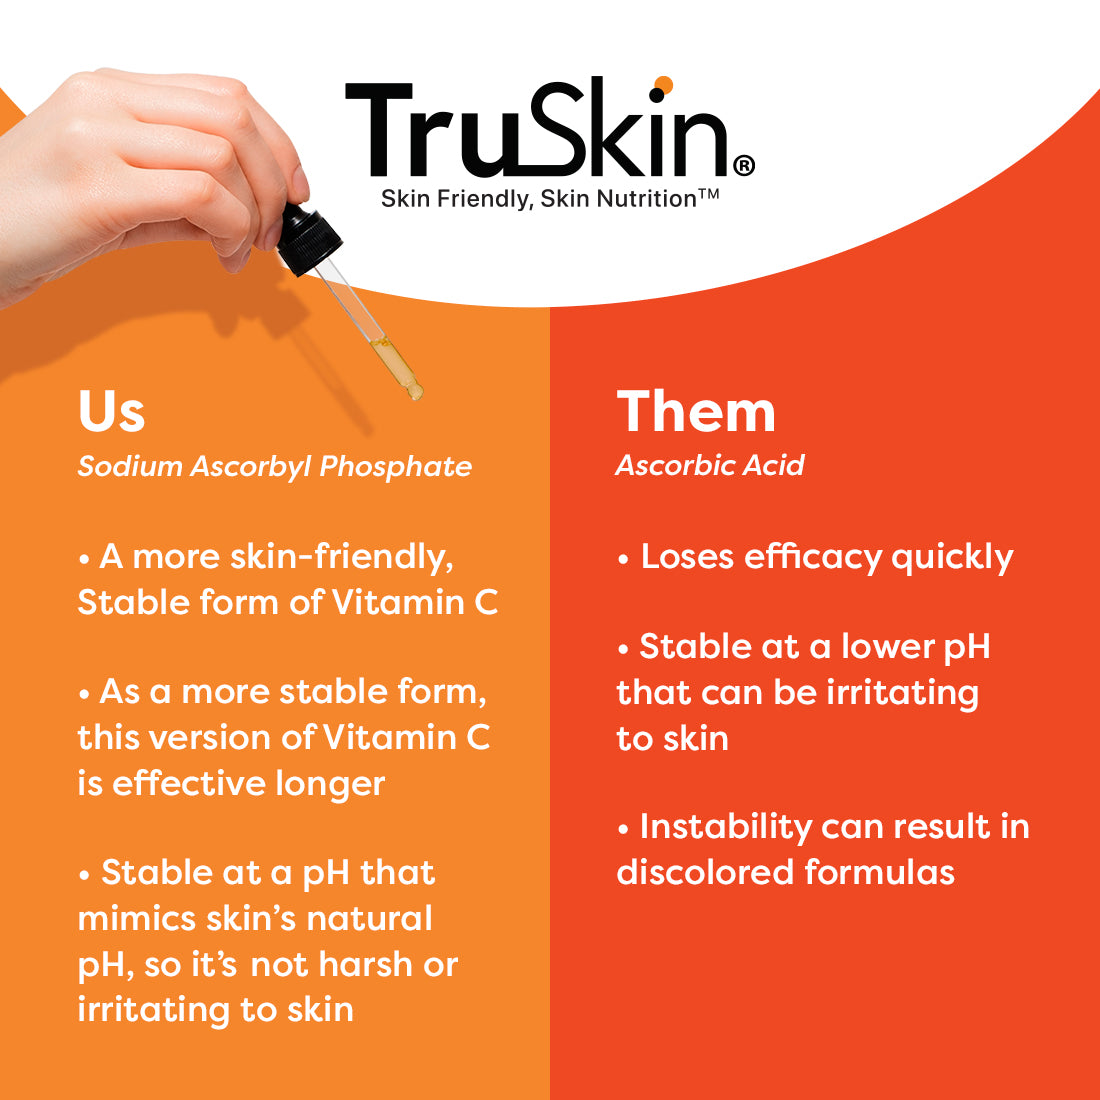 TruSkin Vitamin C Super Serum+